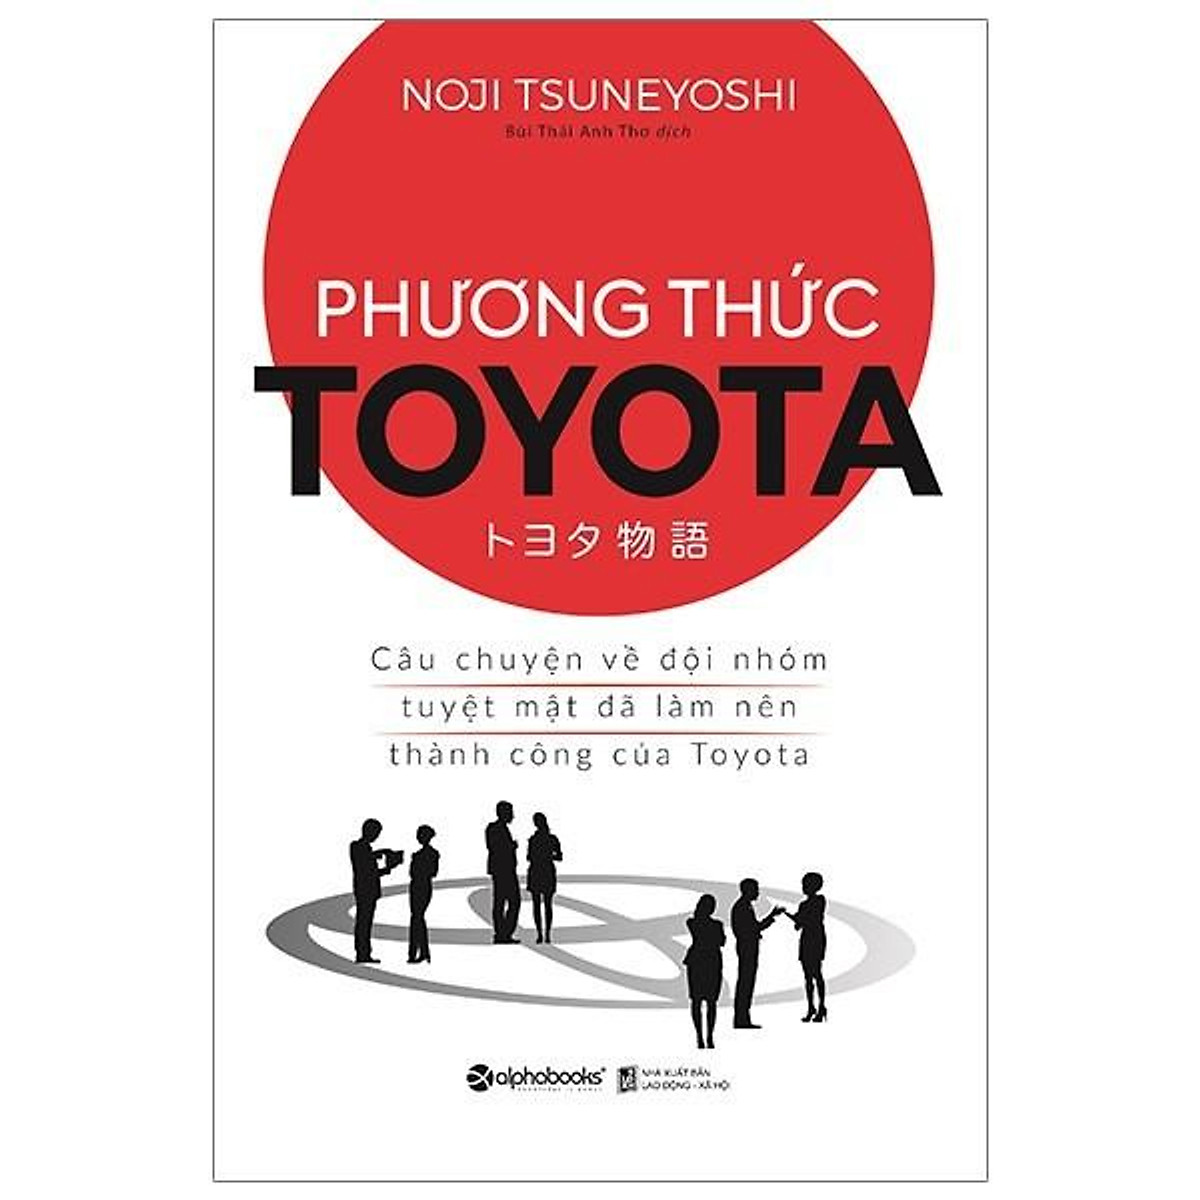 Sách - Phương thức Toyota - Câu chuyện về đội nhóm tuyệt mật đã làm nên thành công của Toyota